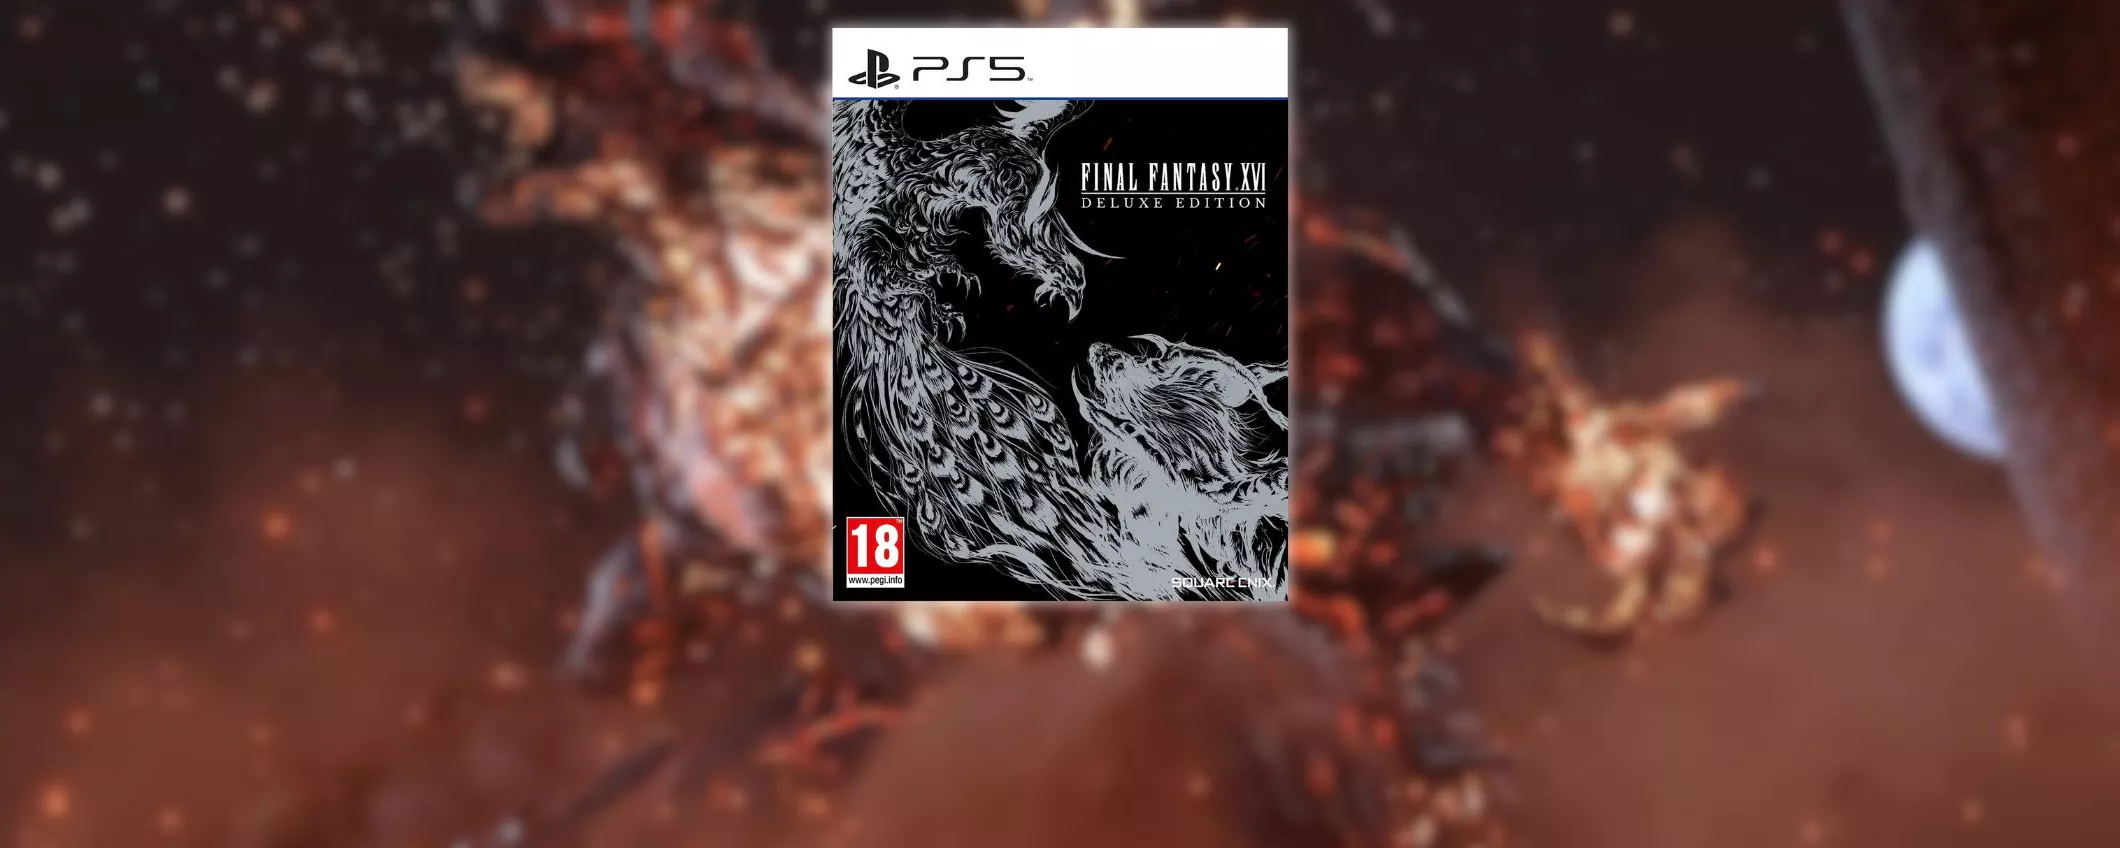 RISPARMIA 20€ su Final Fantasy XVI Deluxe Edition: scontatissimo (90,80€)